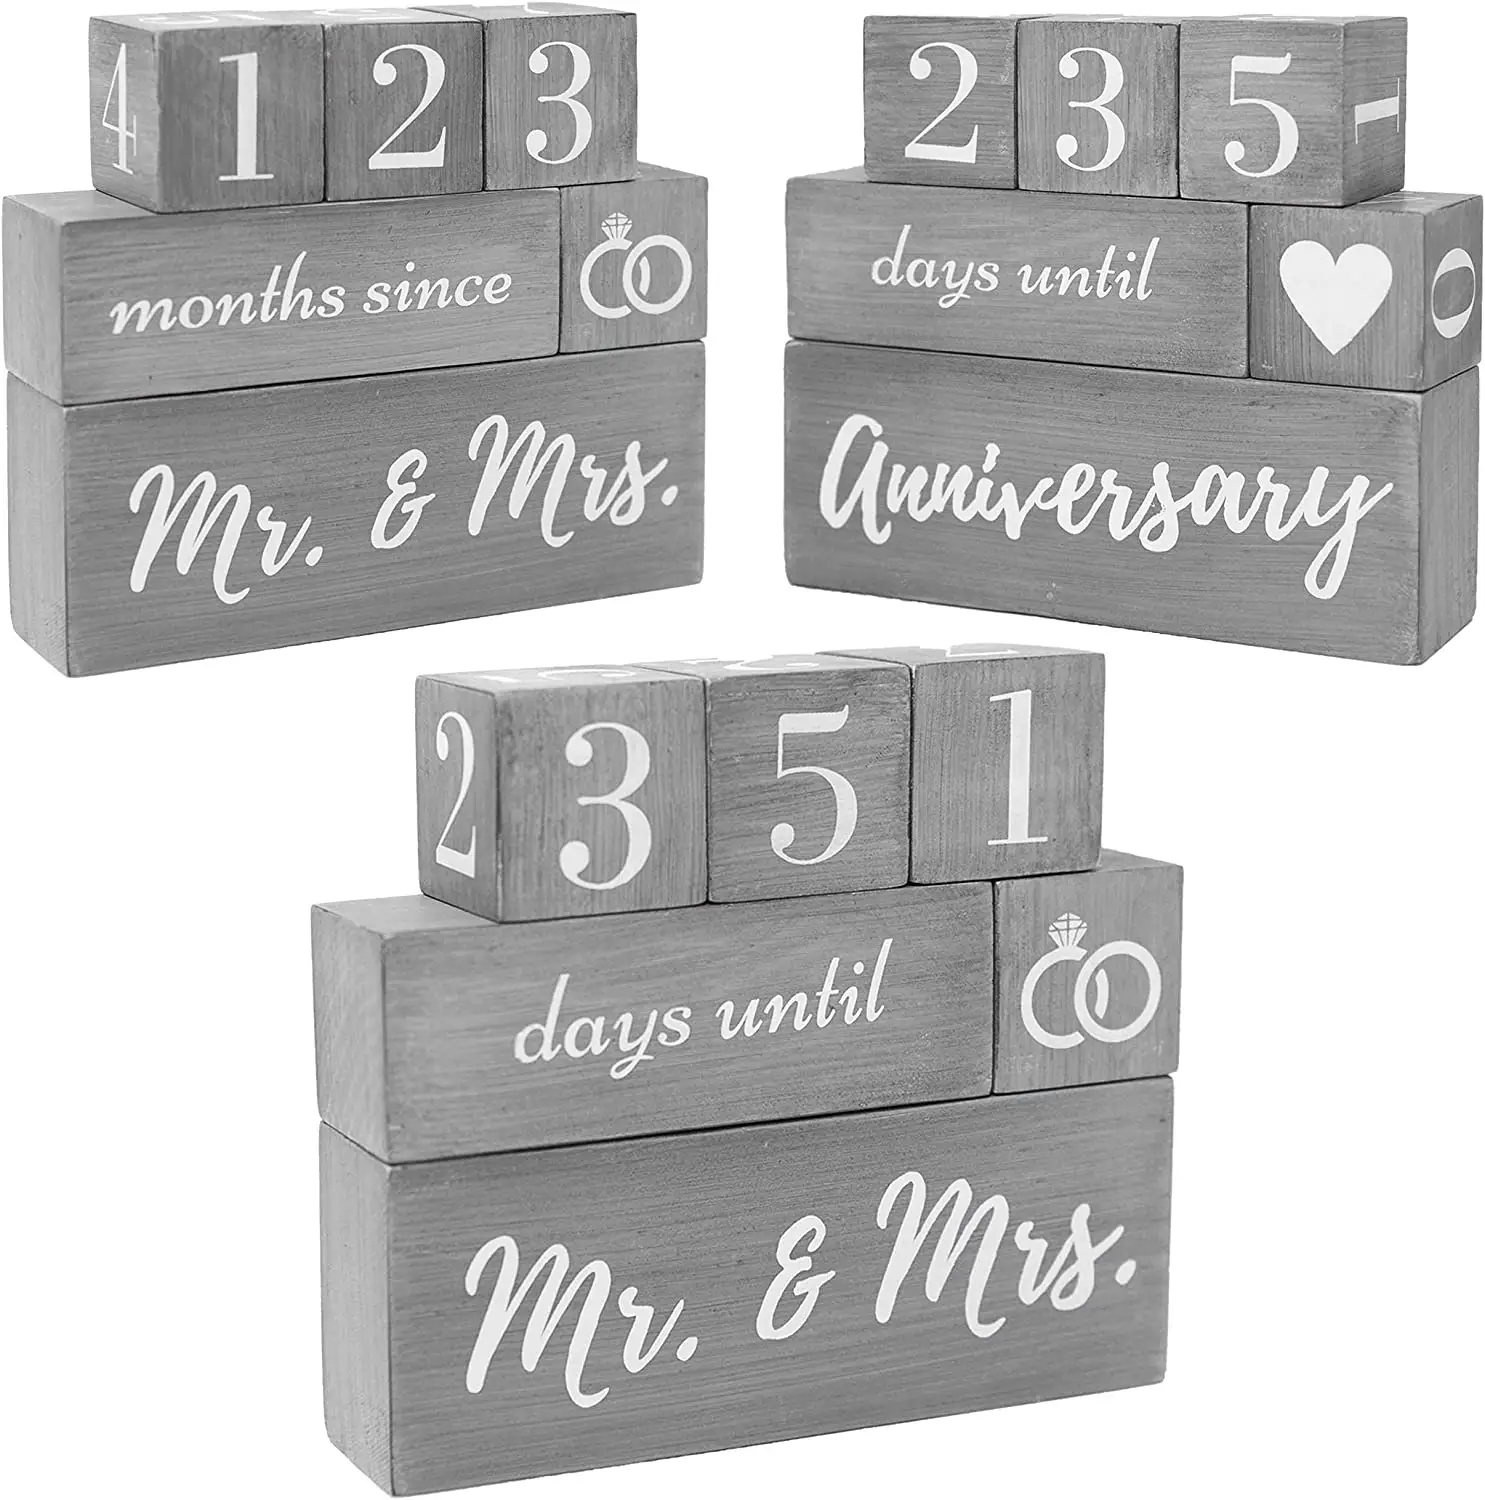 Bauernhaus Hochzeit Countdown Kalender Block Verlobung geschenke für Paare Reversible Text block für Hochzeit Ehe